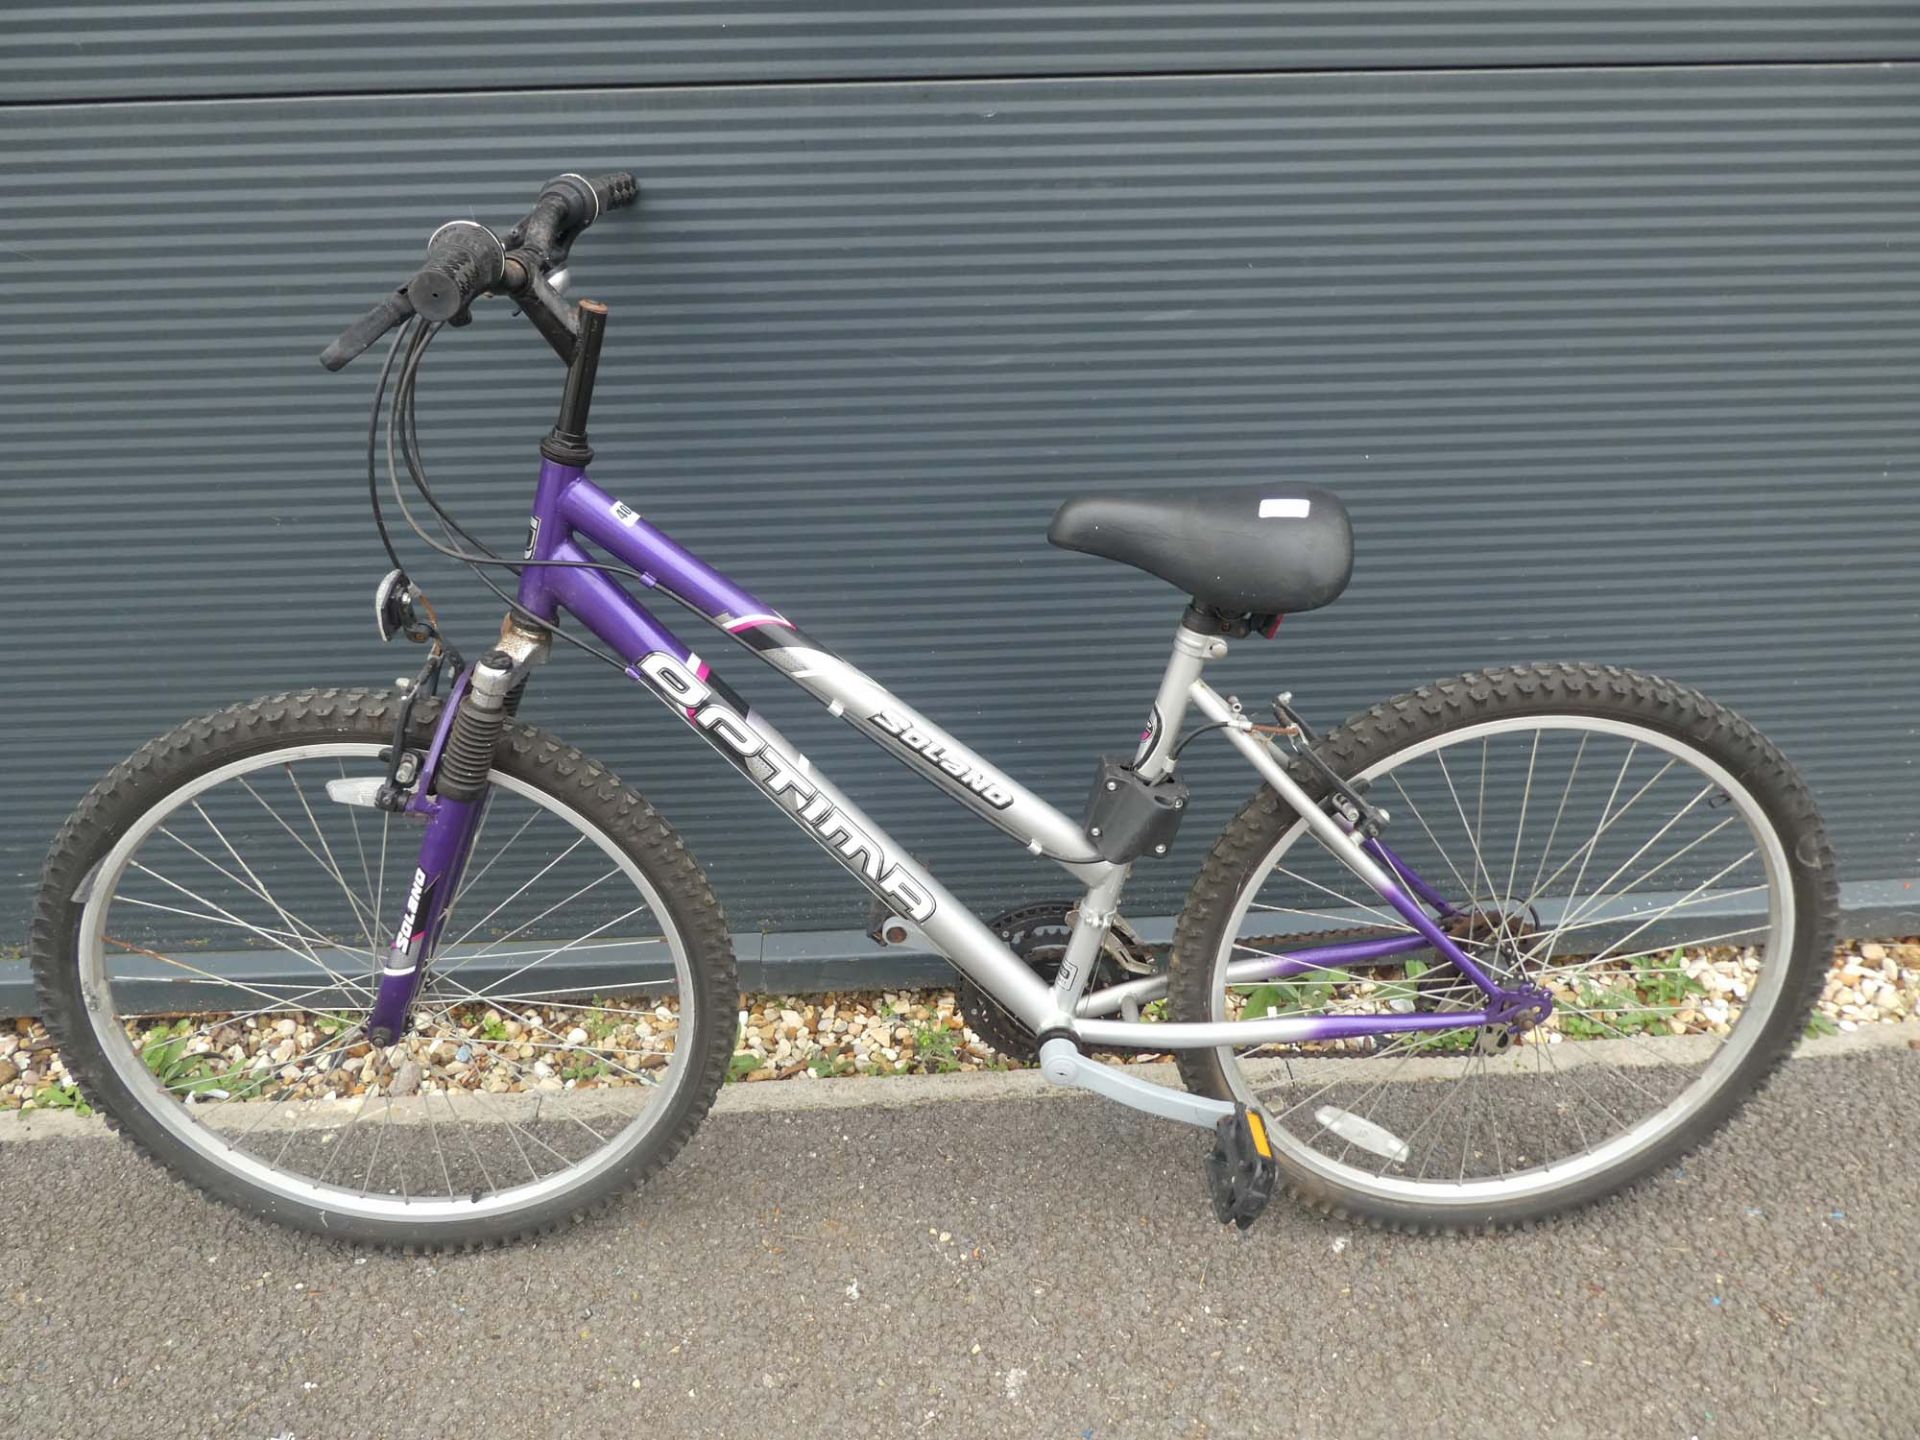 Solano mountain bike in silver and purple